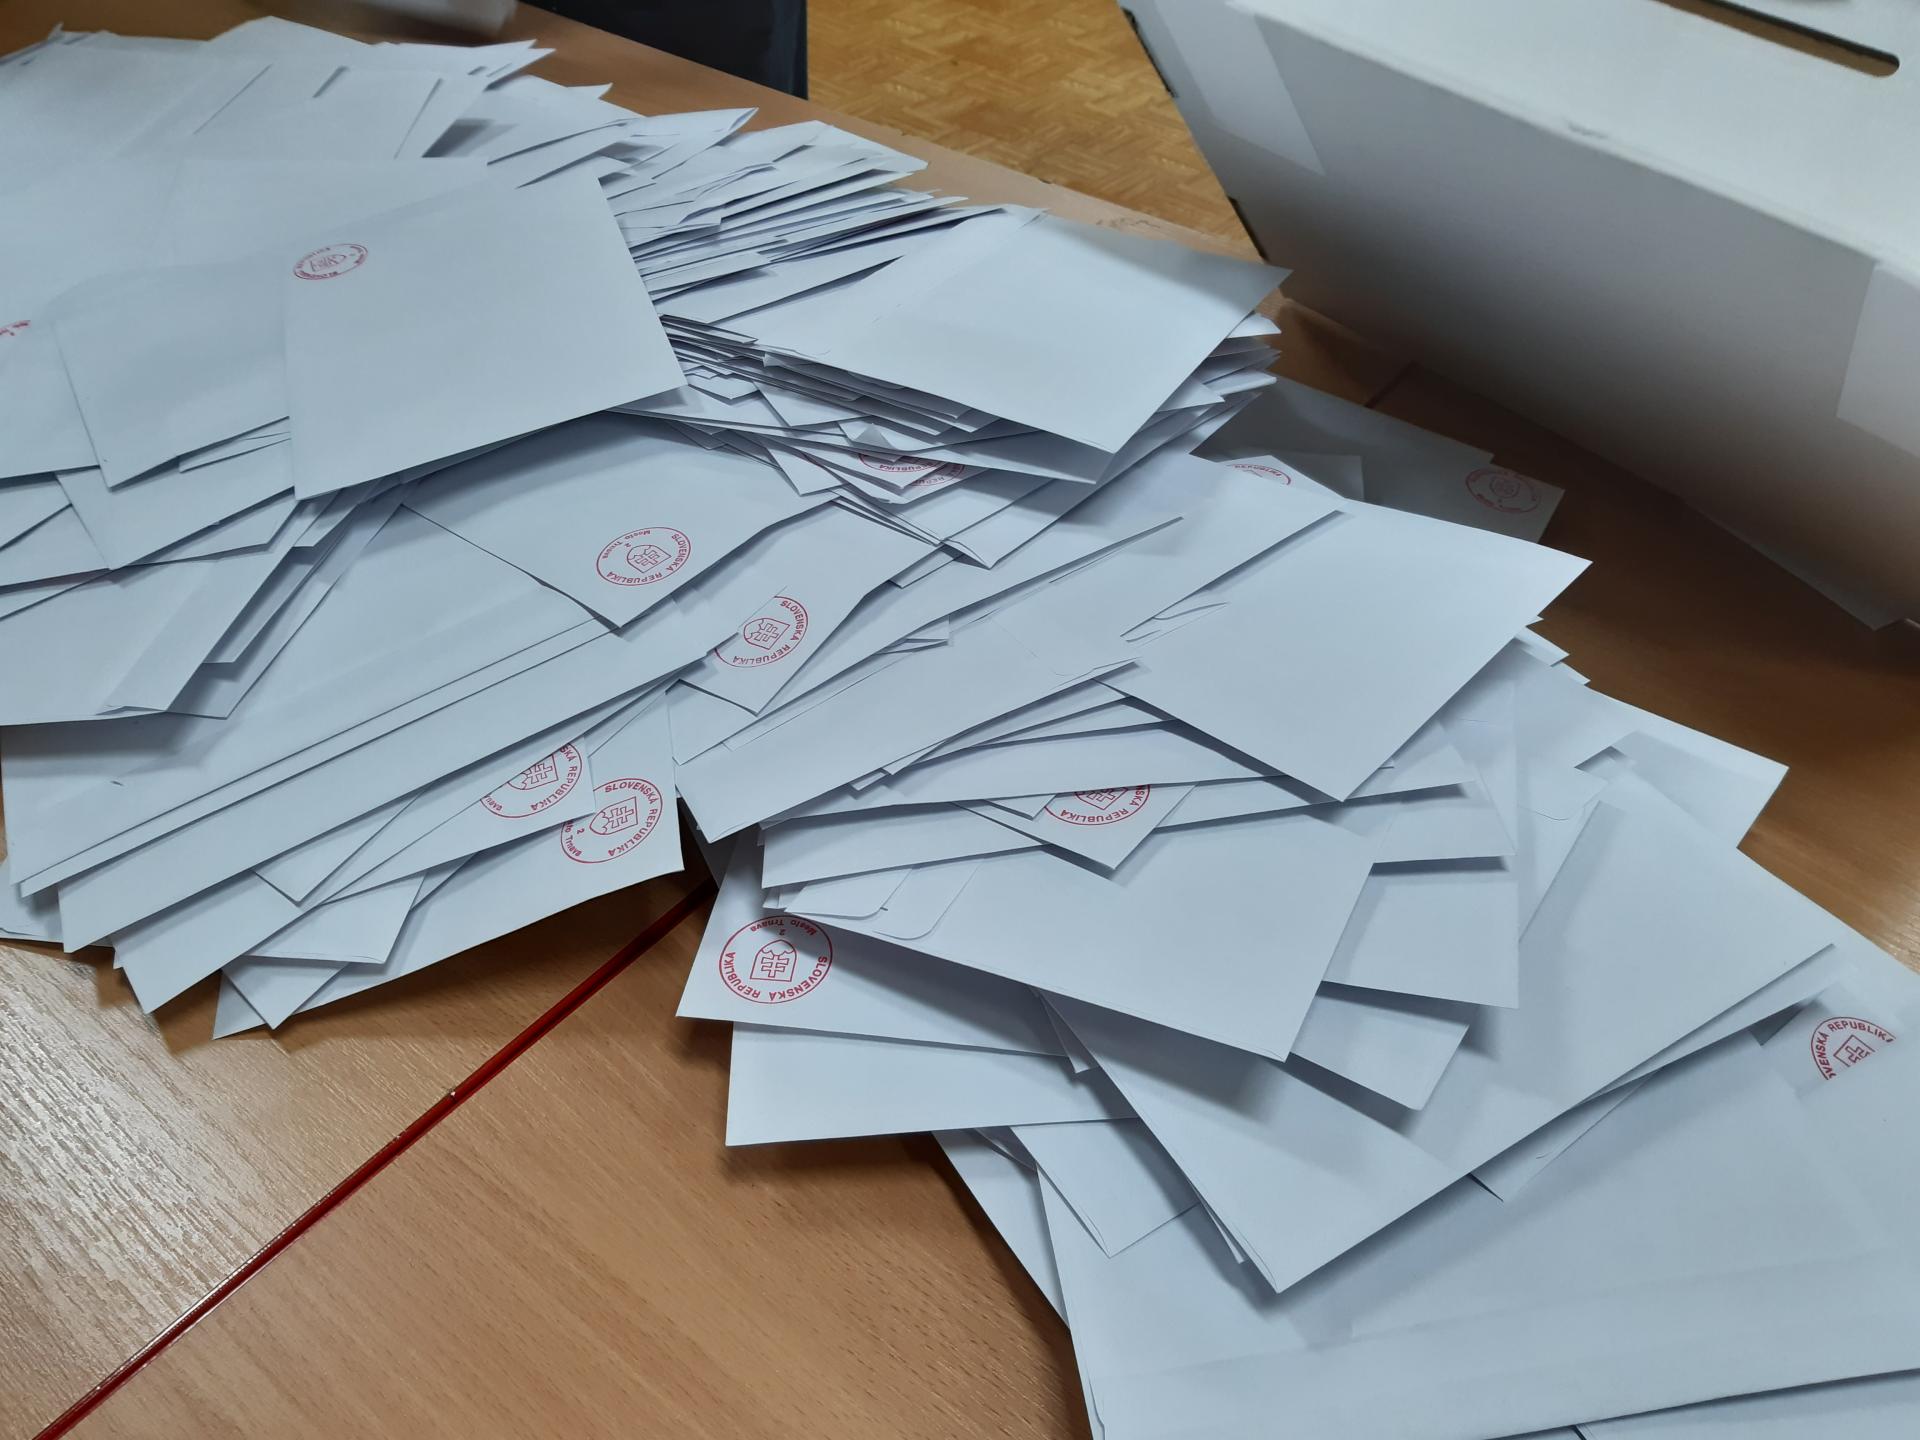 Volebné komisie na väčšine Slovenska už začali sčítavať hlasovacie lístky.